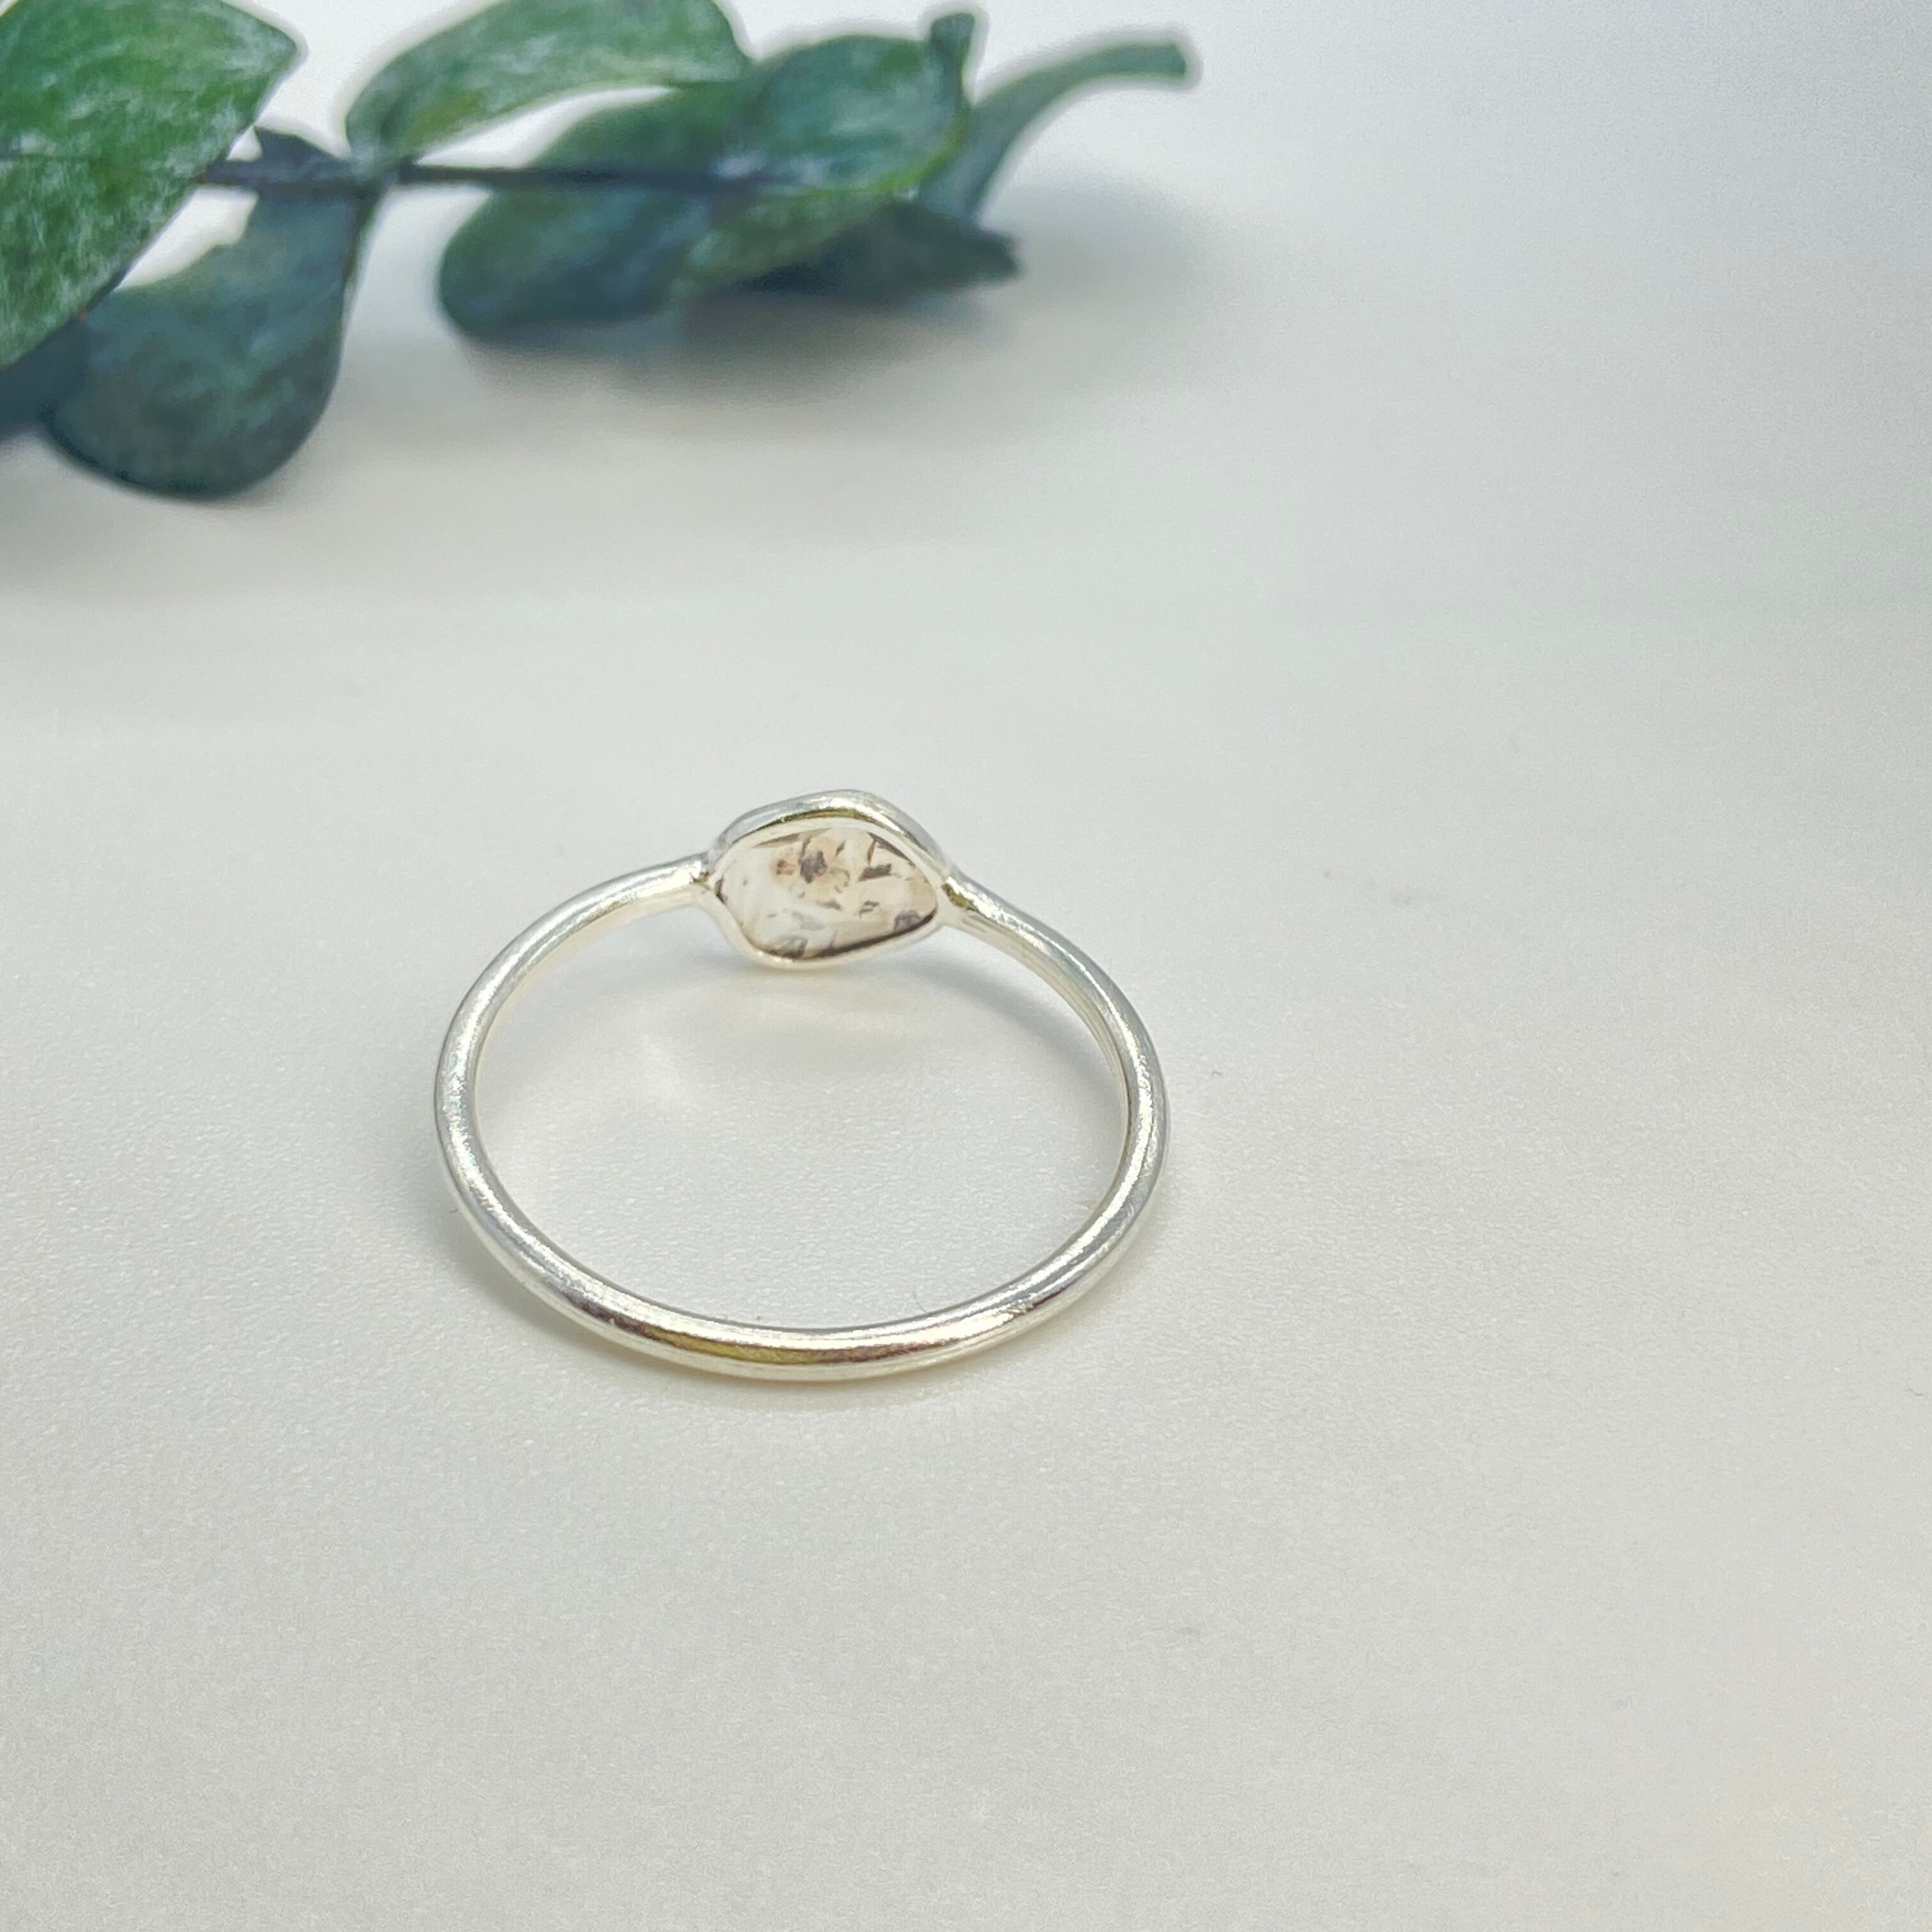 上品な輝きが美しい 1粒スライスダイヤモンドリング | enhance jewelry